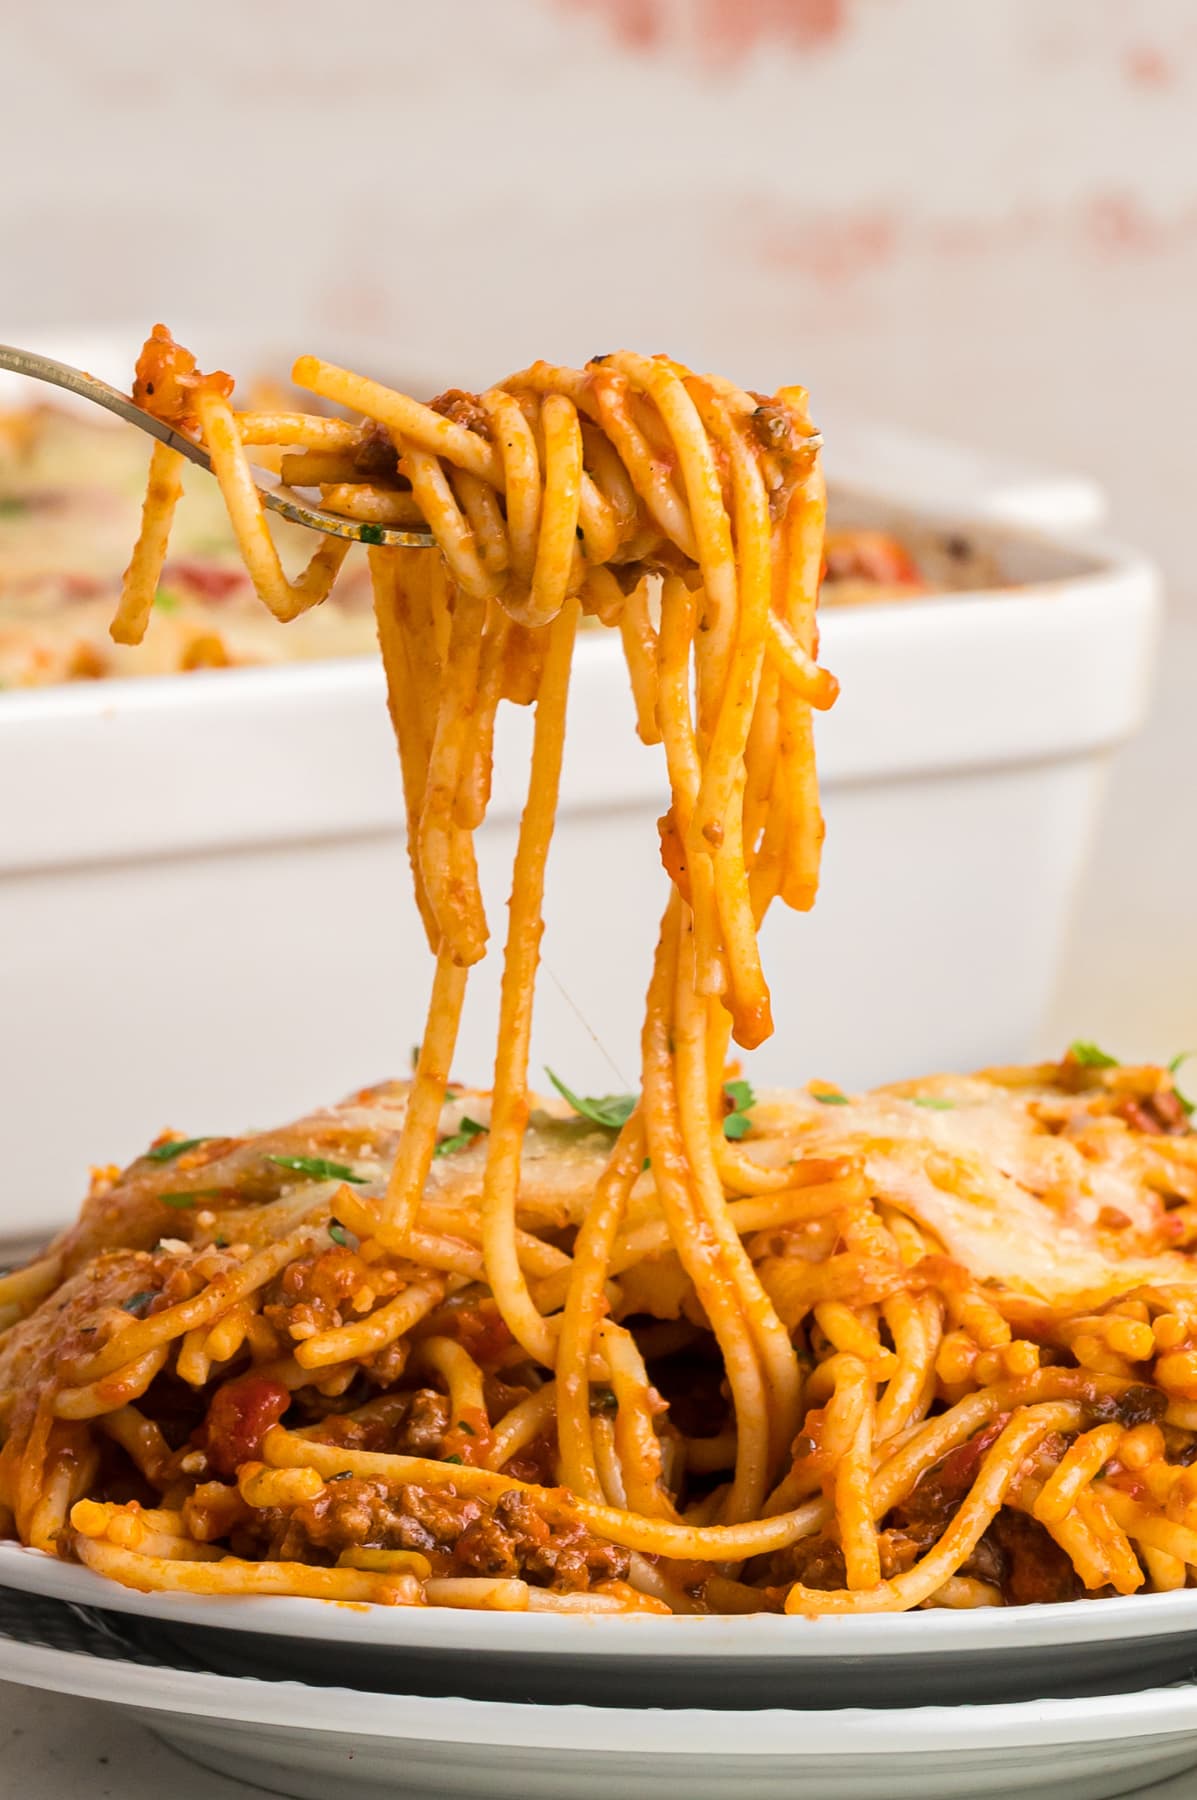 Spaghetti on a fork over a plate of spaghetti